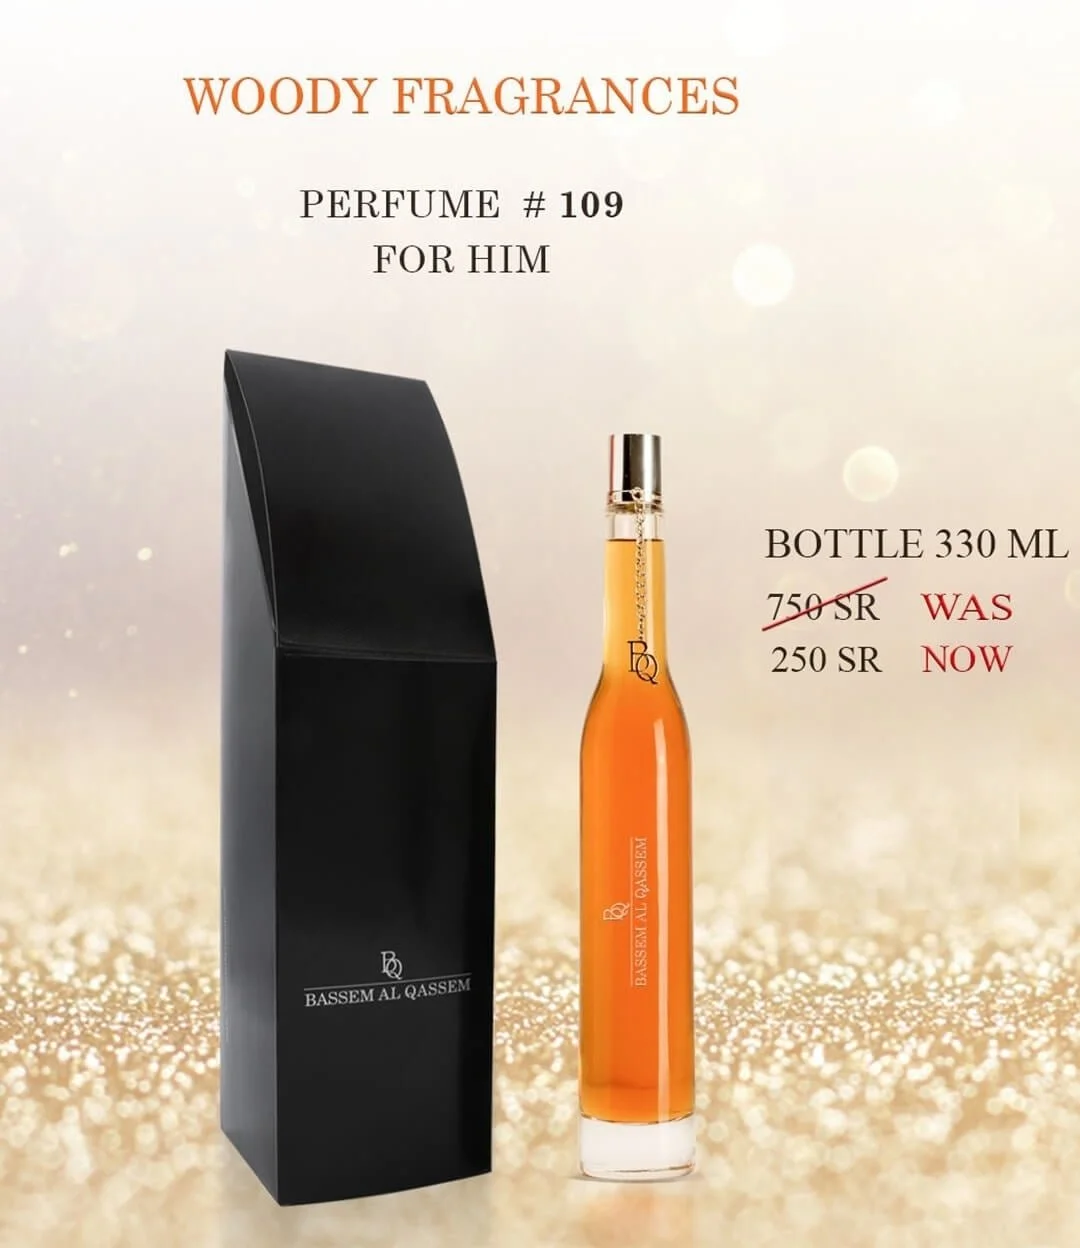 Perfume #109 Woody Fragrance for Him by Bassem Al Qassem 